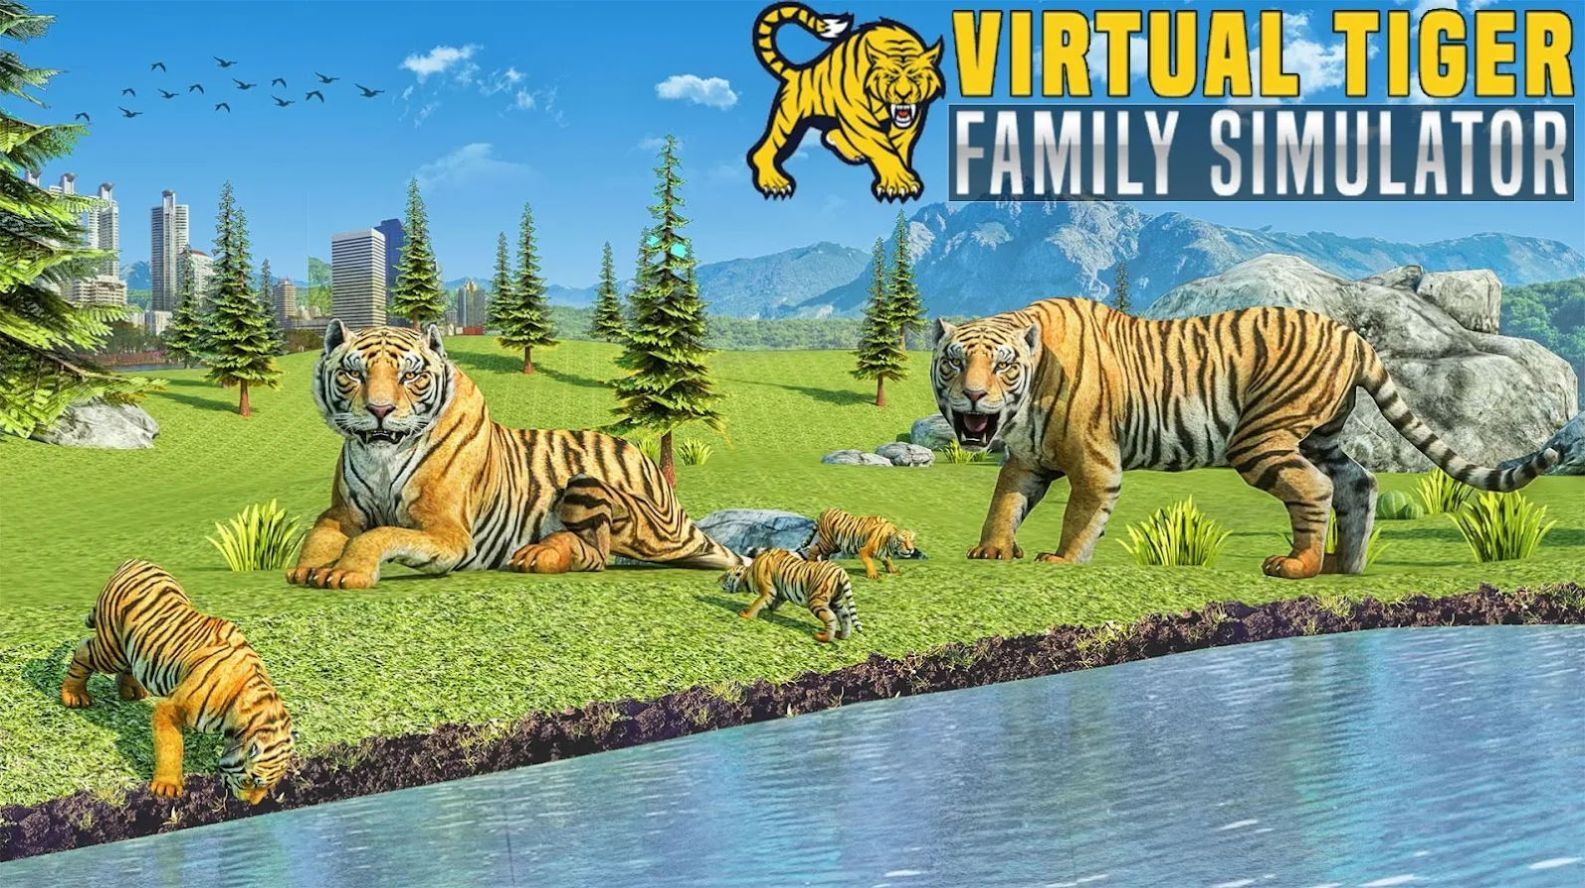 虚拟老虎家族模拟器